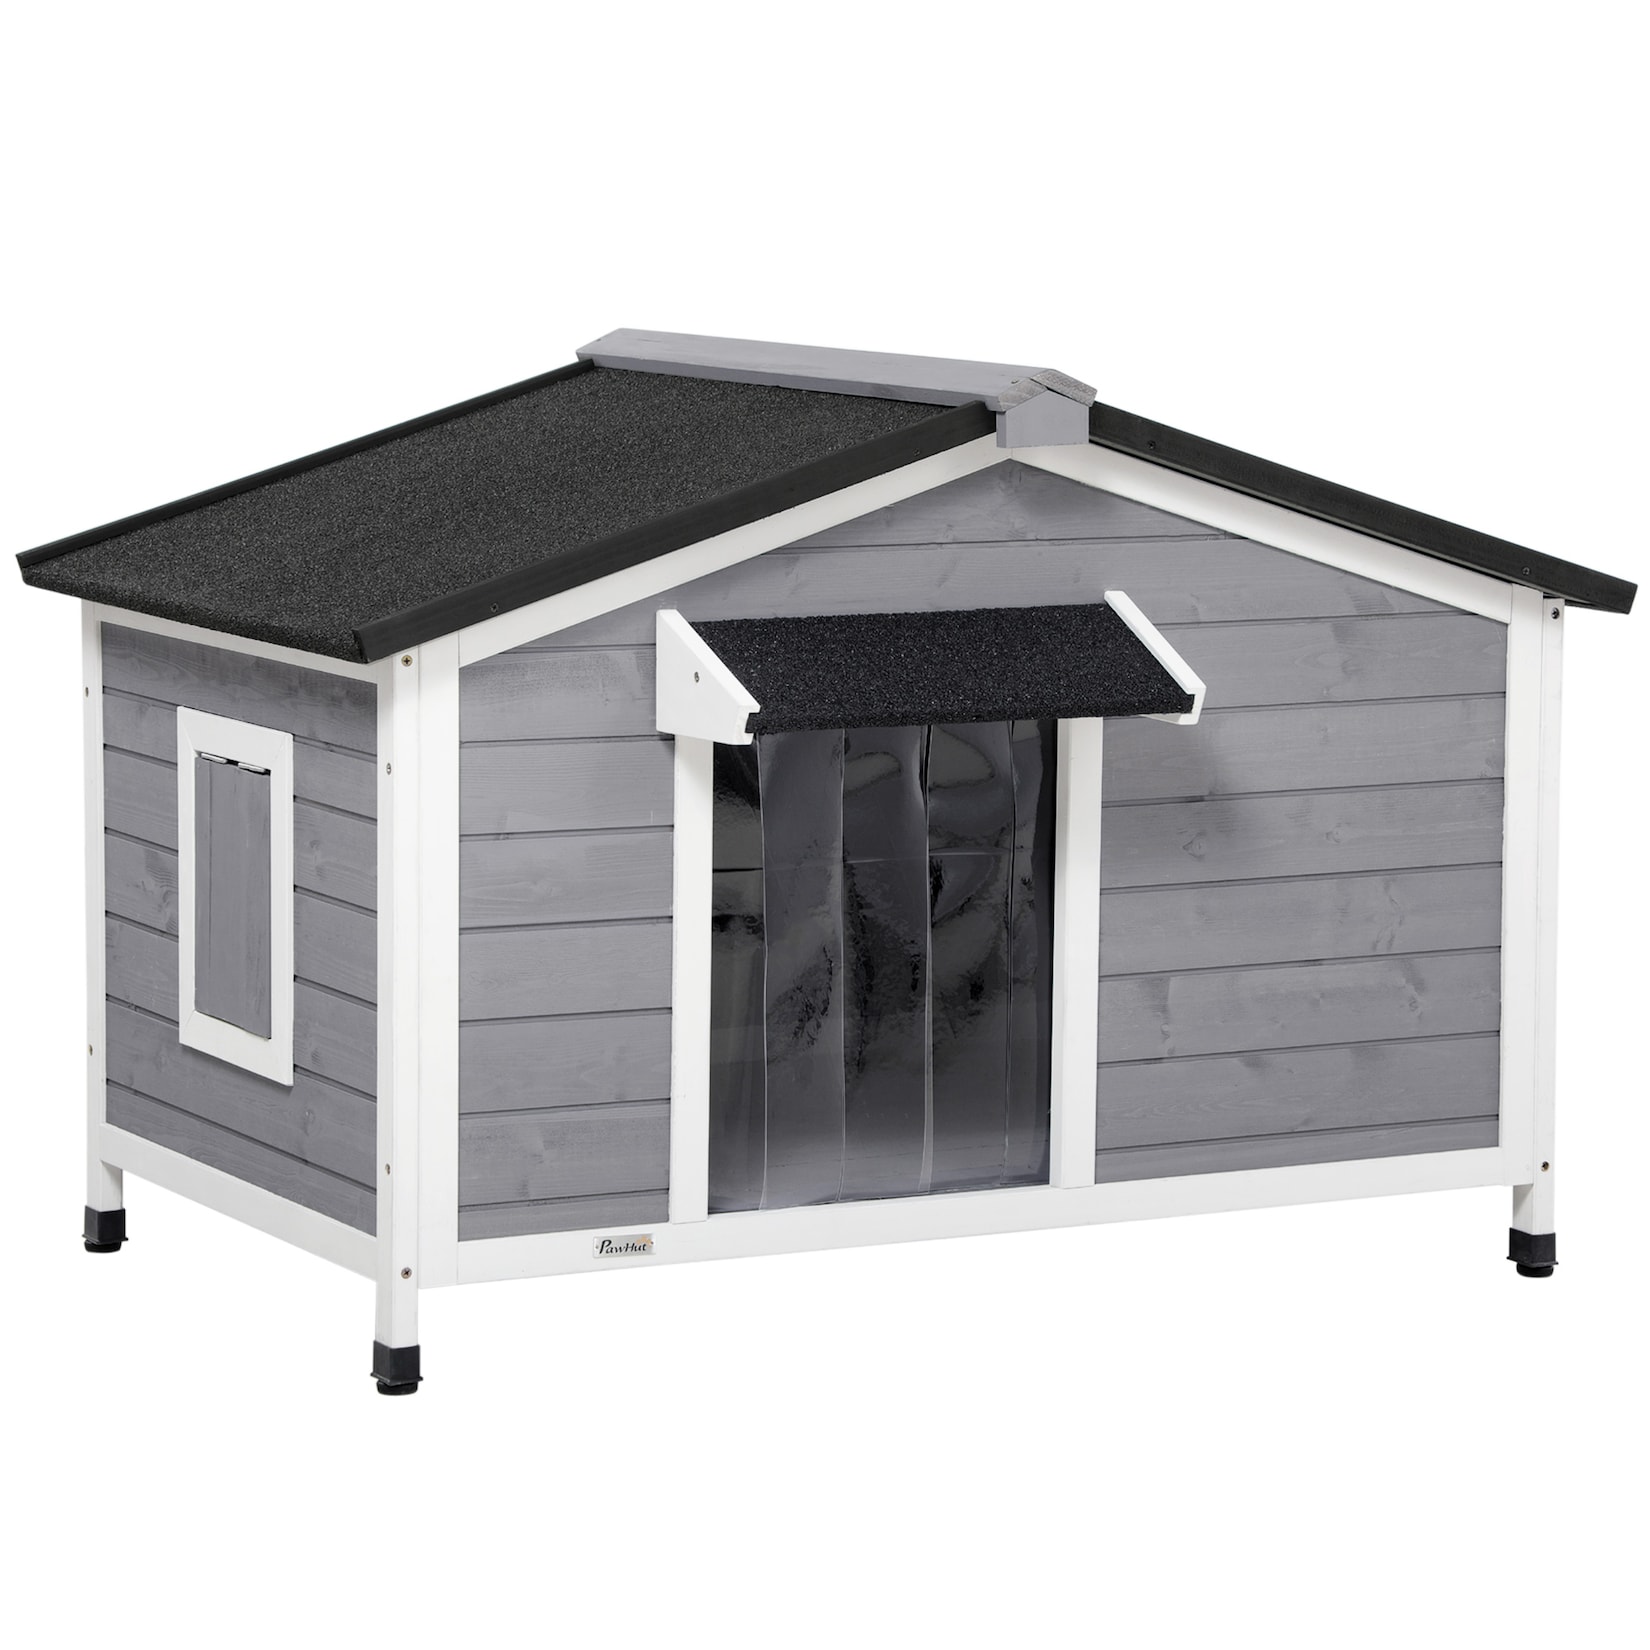 PawHut Hundehütte mit zu öffnendem Asphaltdach grau, weiß 109L x 79B x 72H cm hundehaus mit zu öffnendem asphaltdach kleintierhaus tannenholz